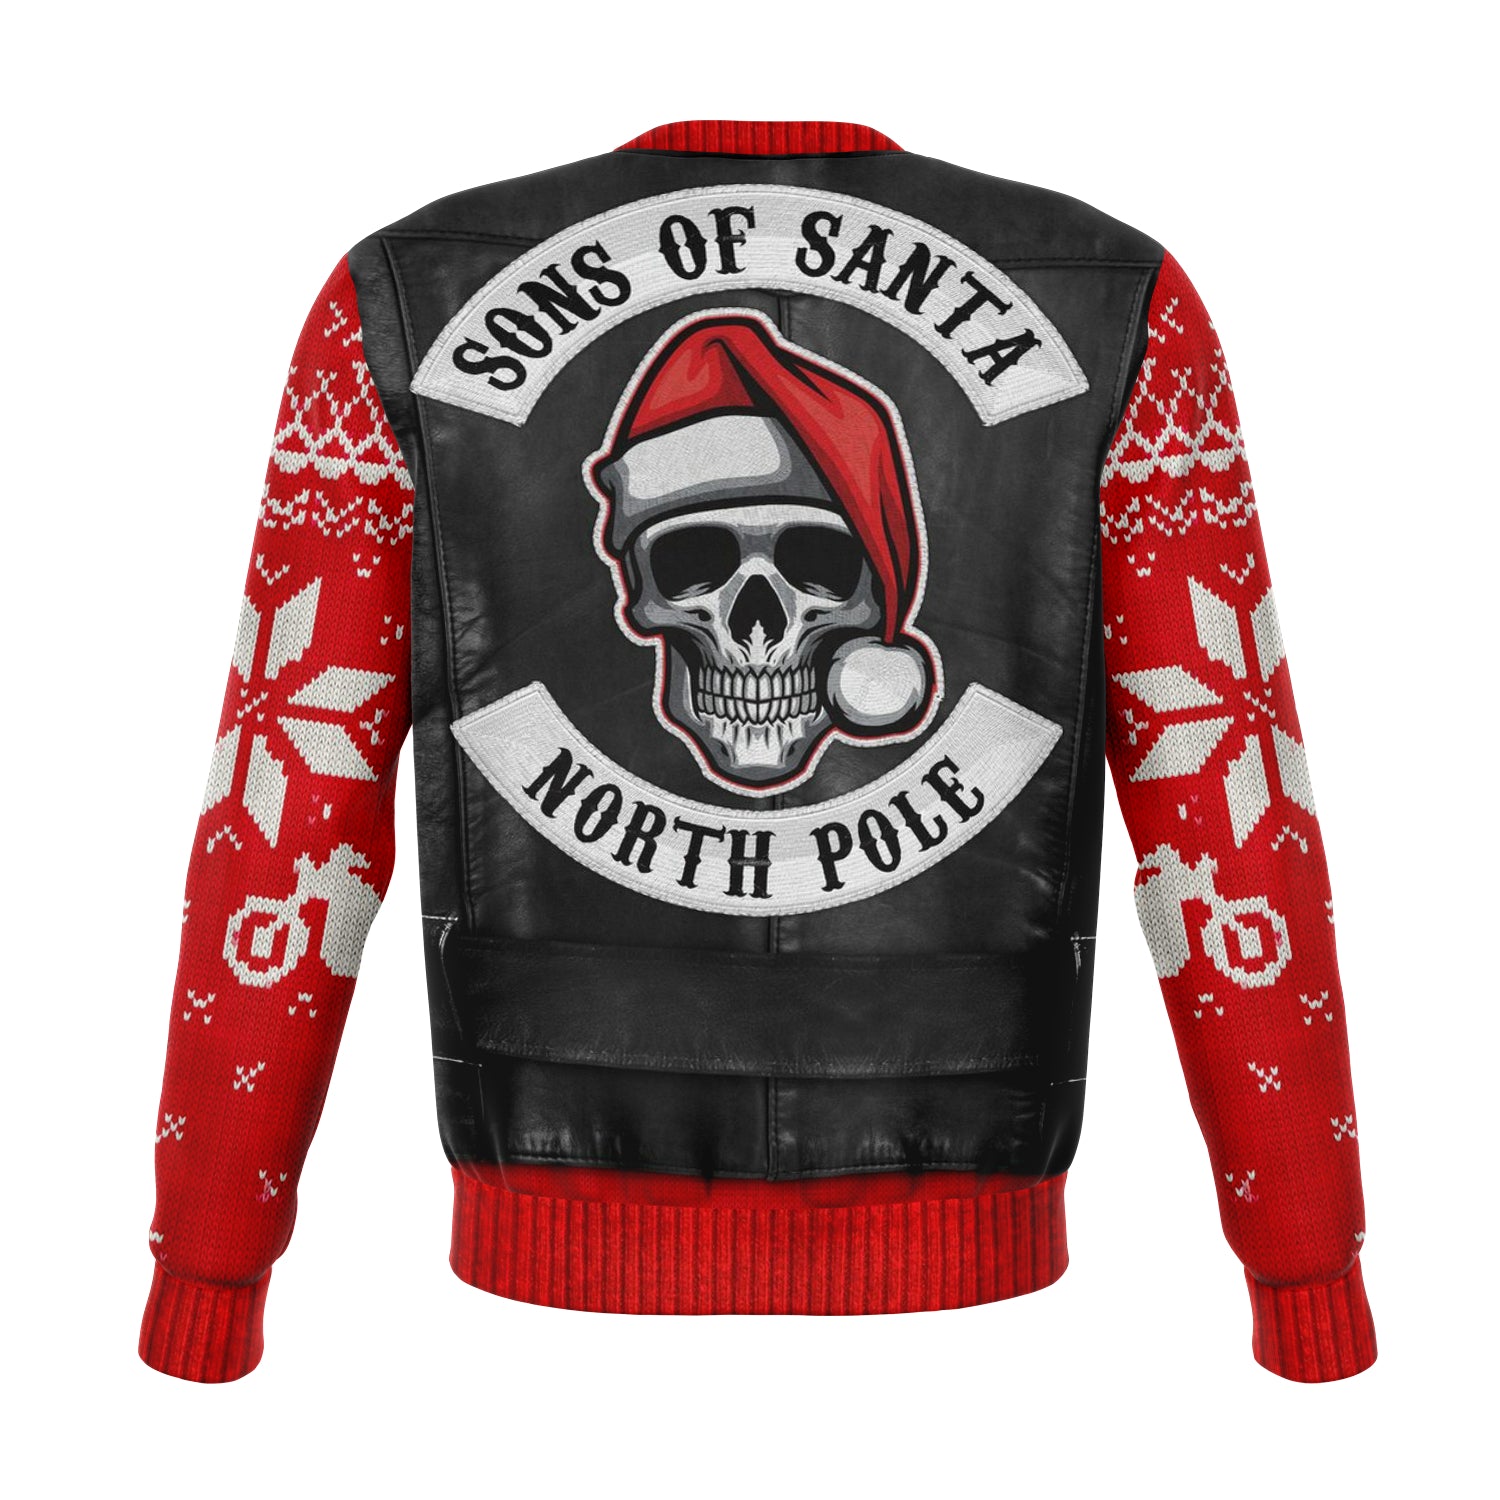 Sons of Santa Sweatshirt | Unisex Ugly Christmas Sweater, Xmas Sweater, Holiday Sweater, Festive Sweater, Funny Sweater, Funny Party Shirt